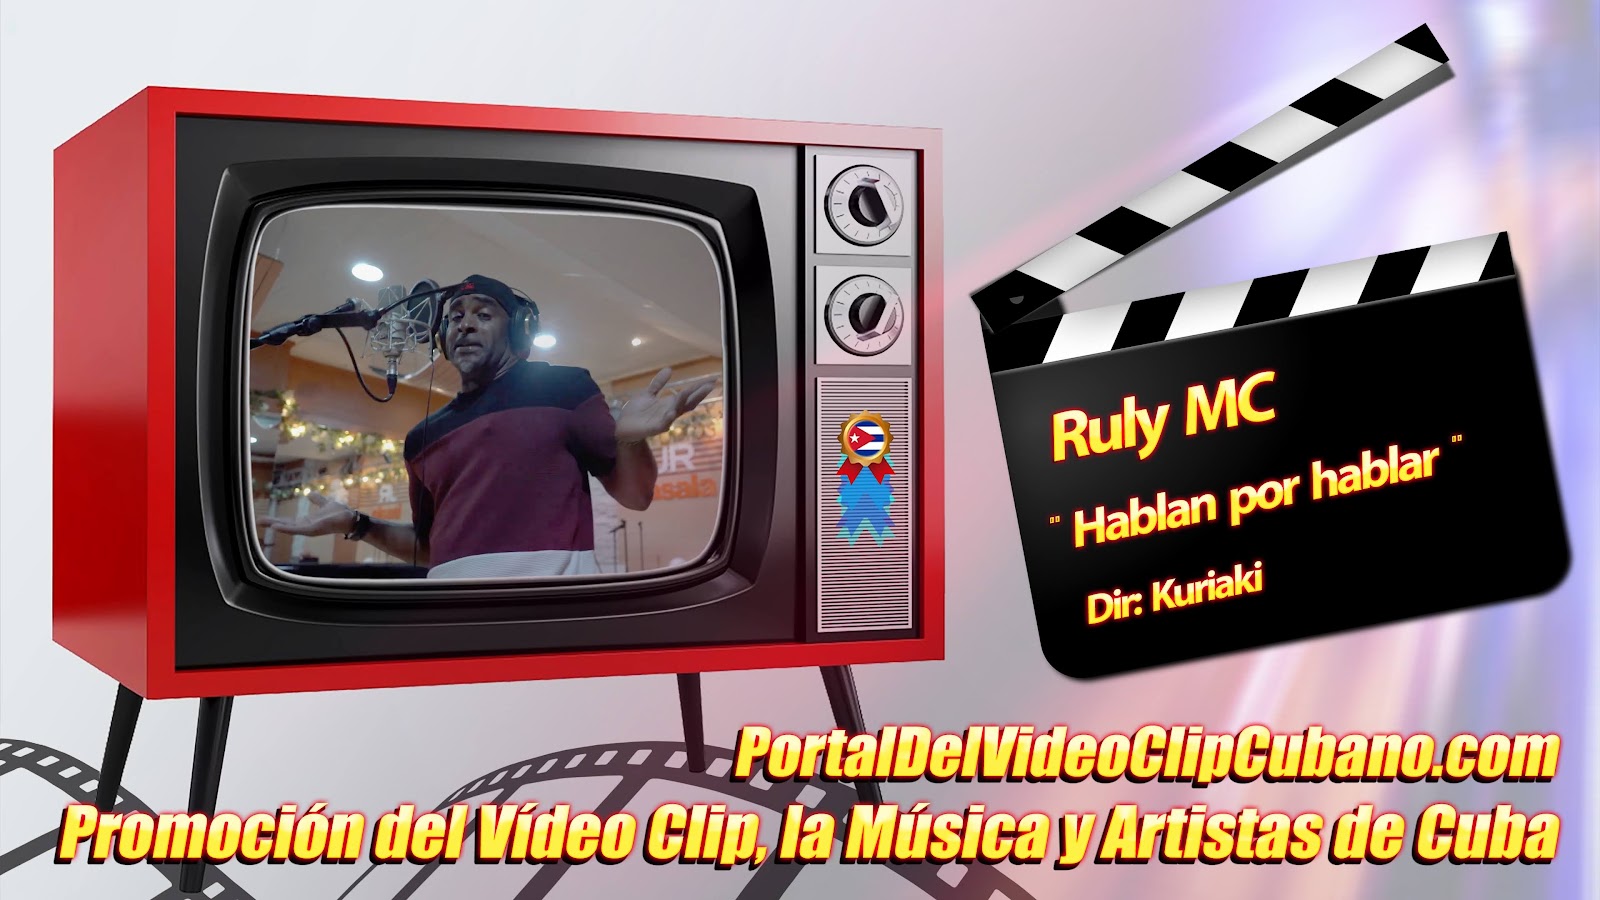 Ruly MC - ¨Hablan por hablar¨ - Realizador: Kuriaki. Portal Del Vídeo Clip Cubano. Música Urbana Cubana. Canción. CUBA.